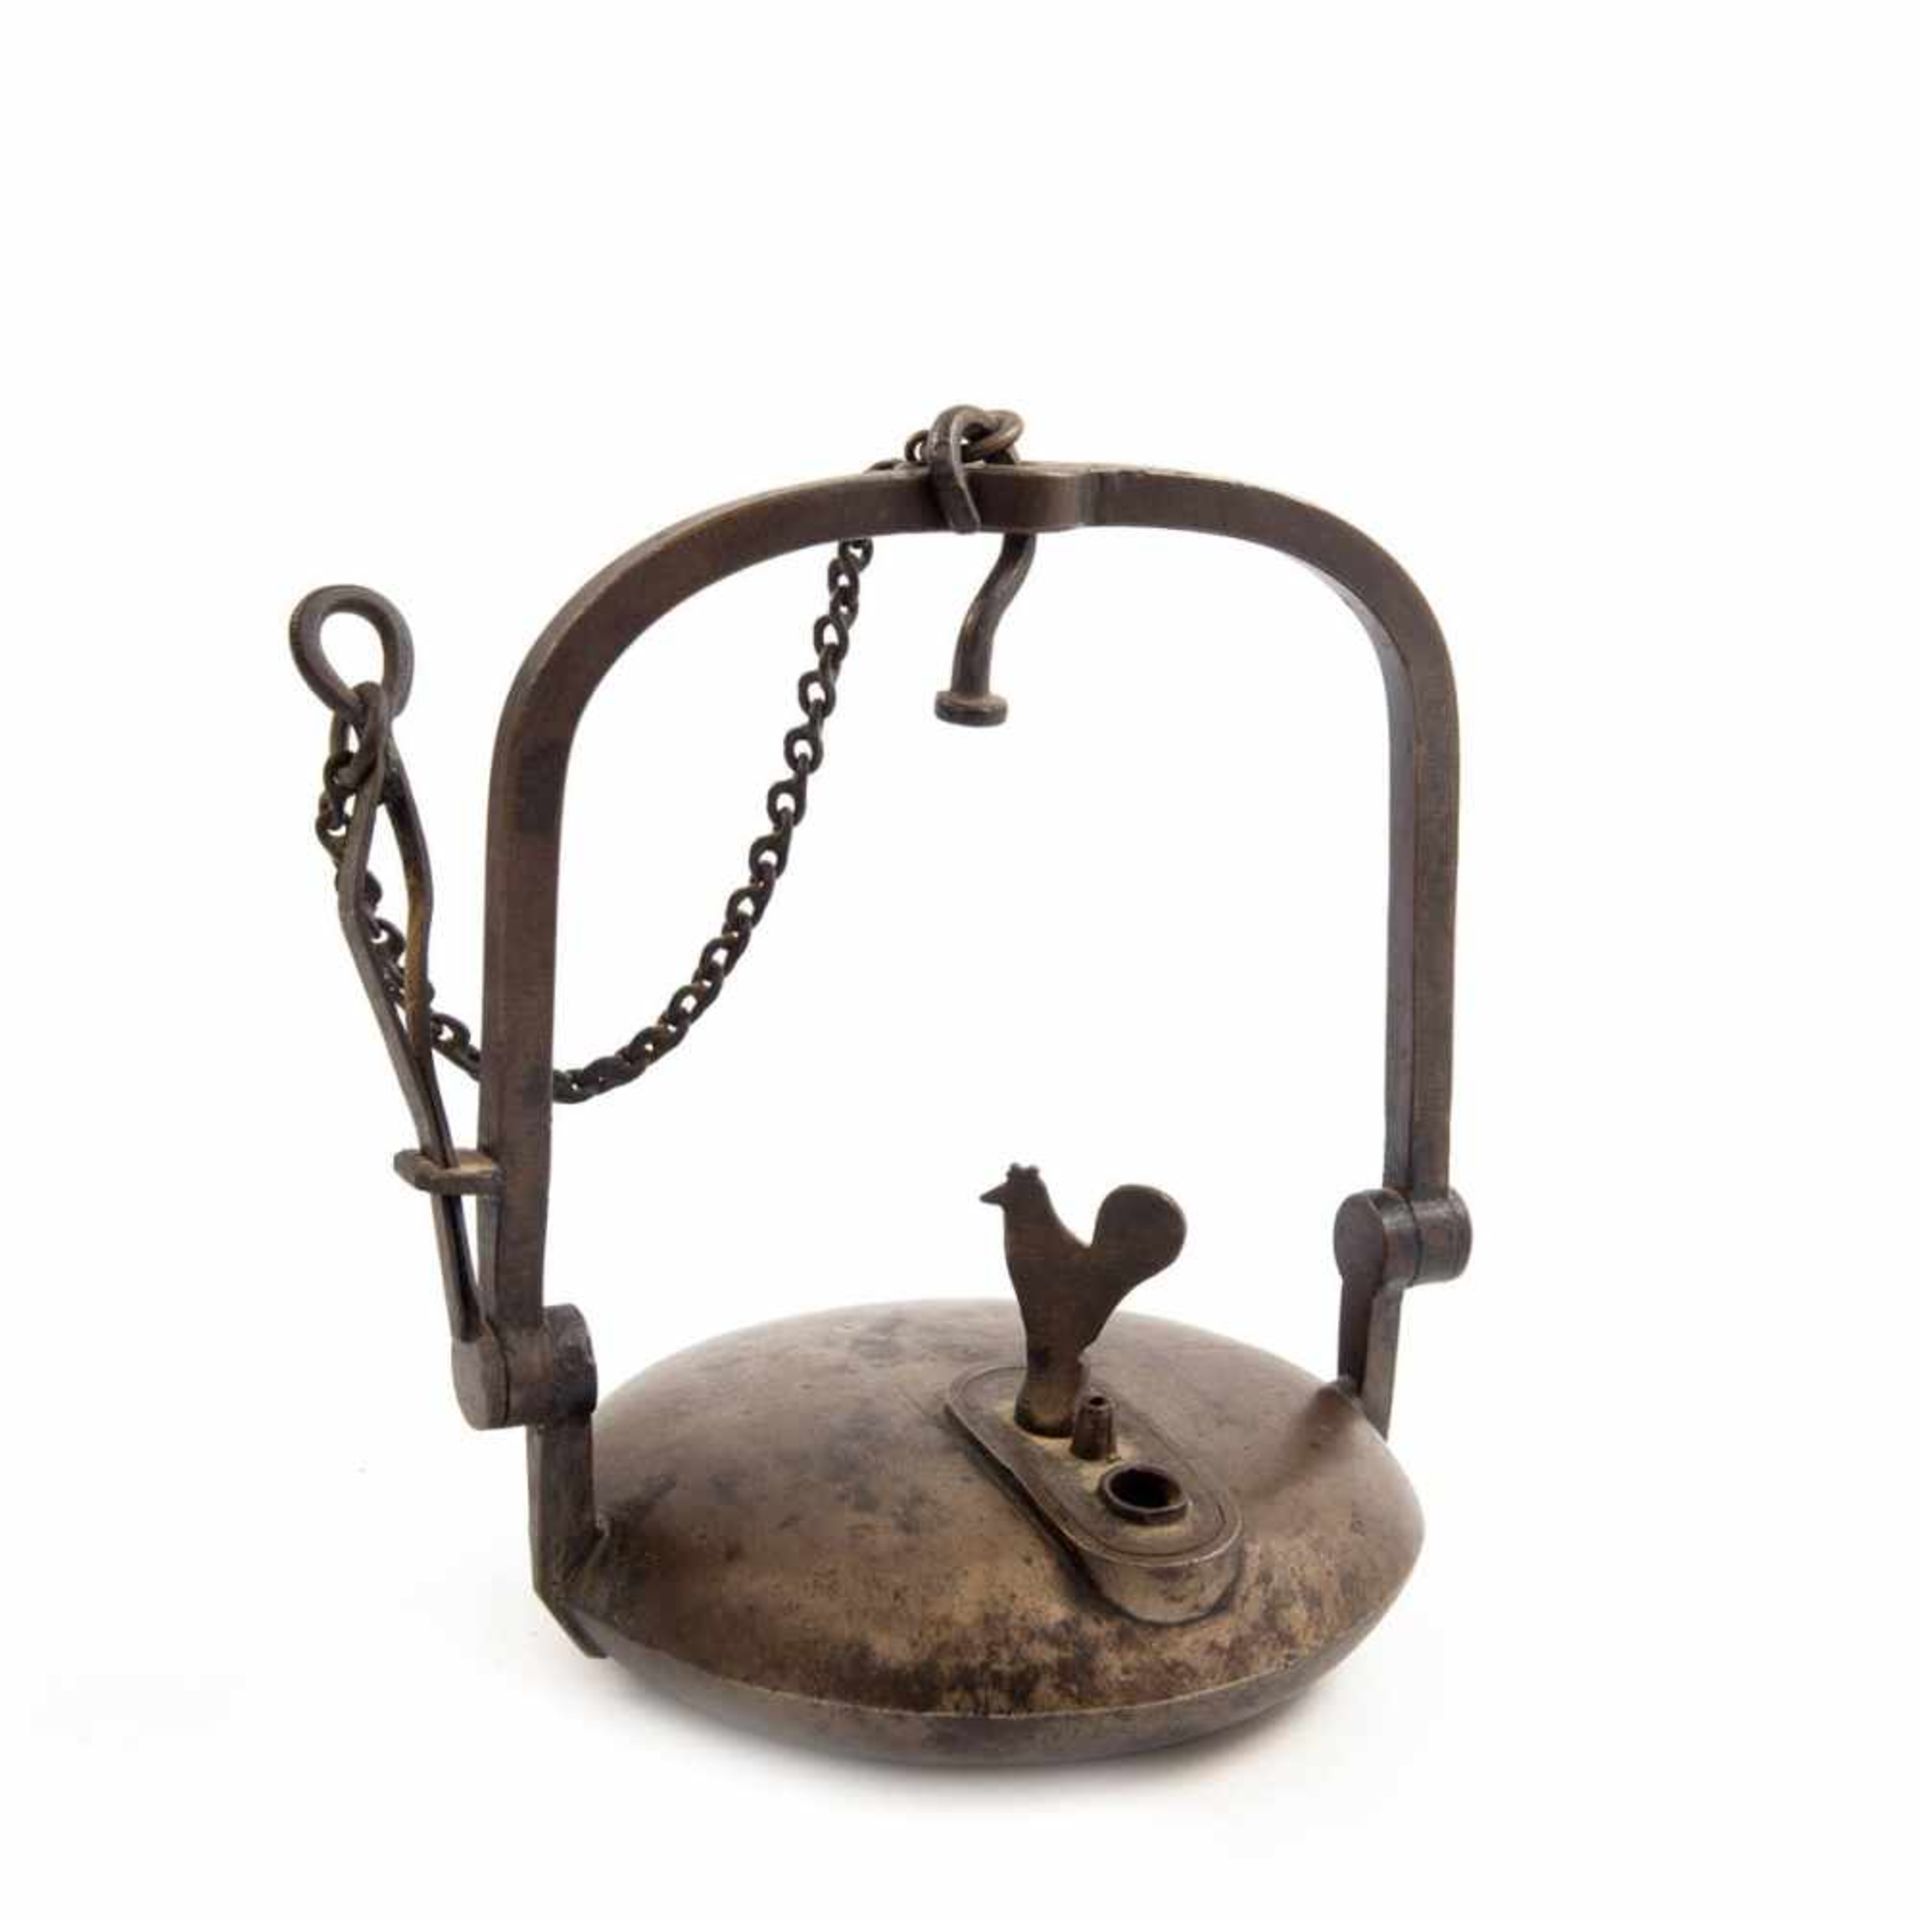 Grubenlampe um 1900 Bronze. Runder Brennstoffbehälter, beweglicher Bügelhenkel mit Zange. Dm.: 13